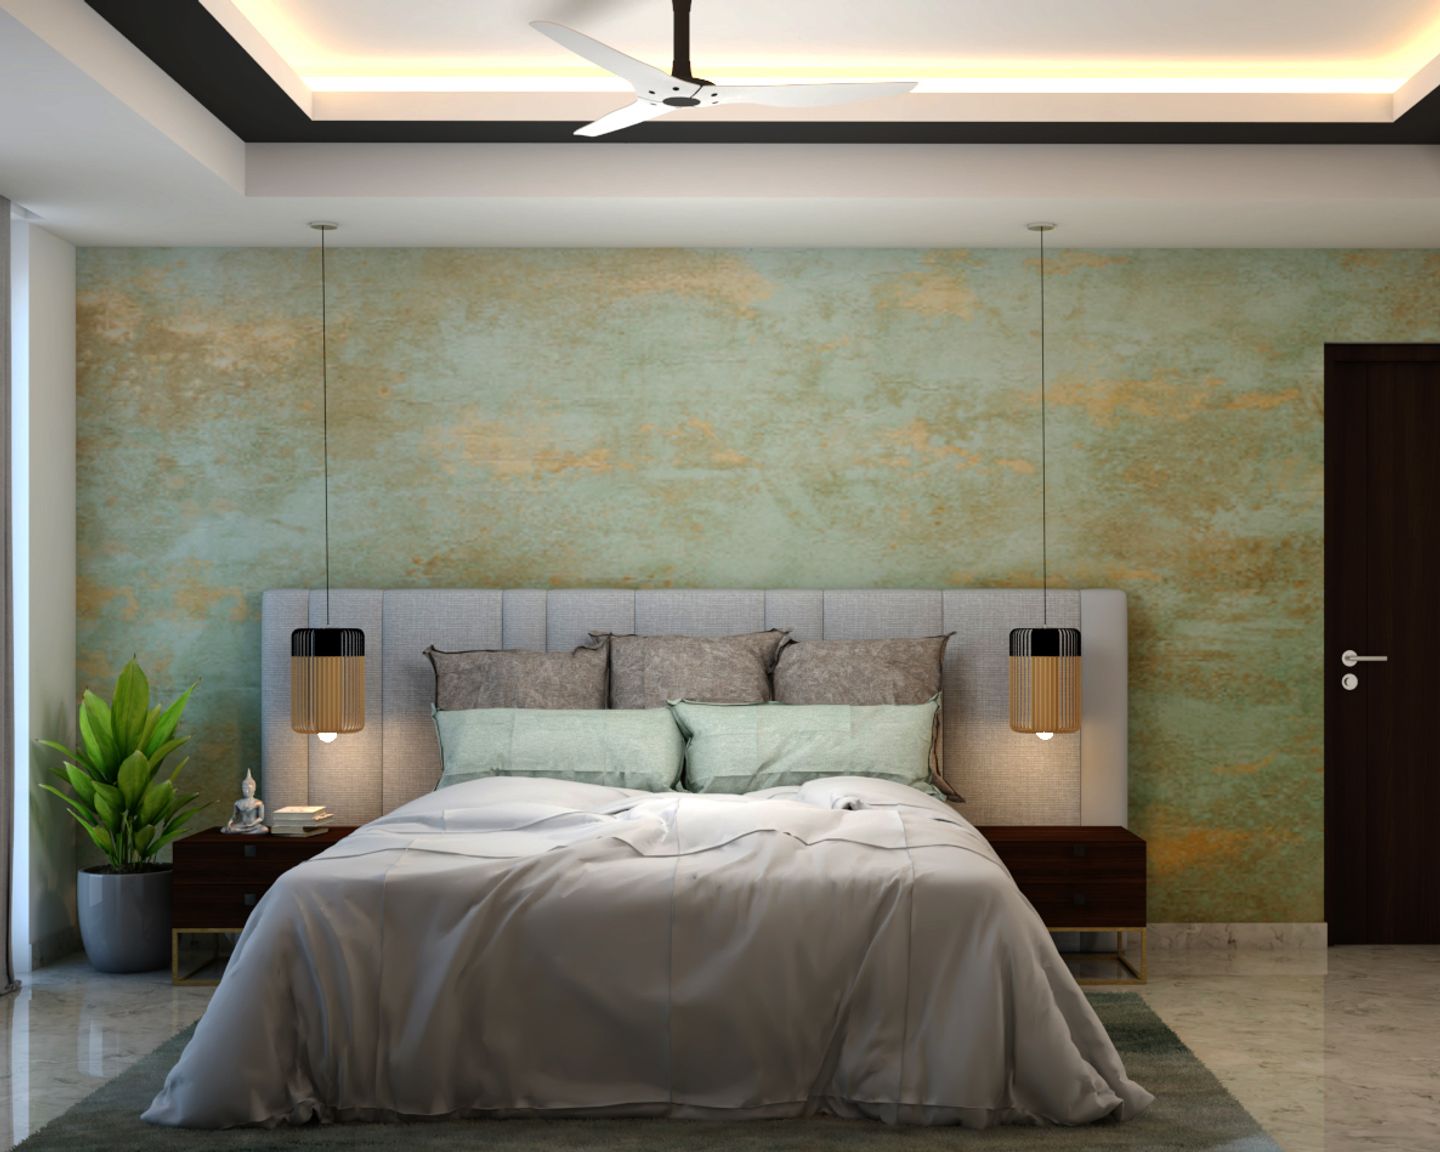 Spacious Bedroom Design With Wooden Nightstands | Livspace